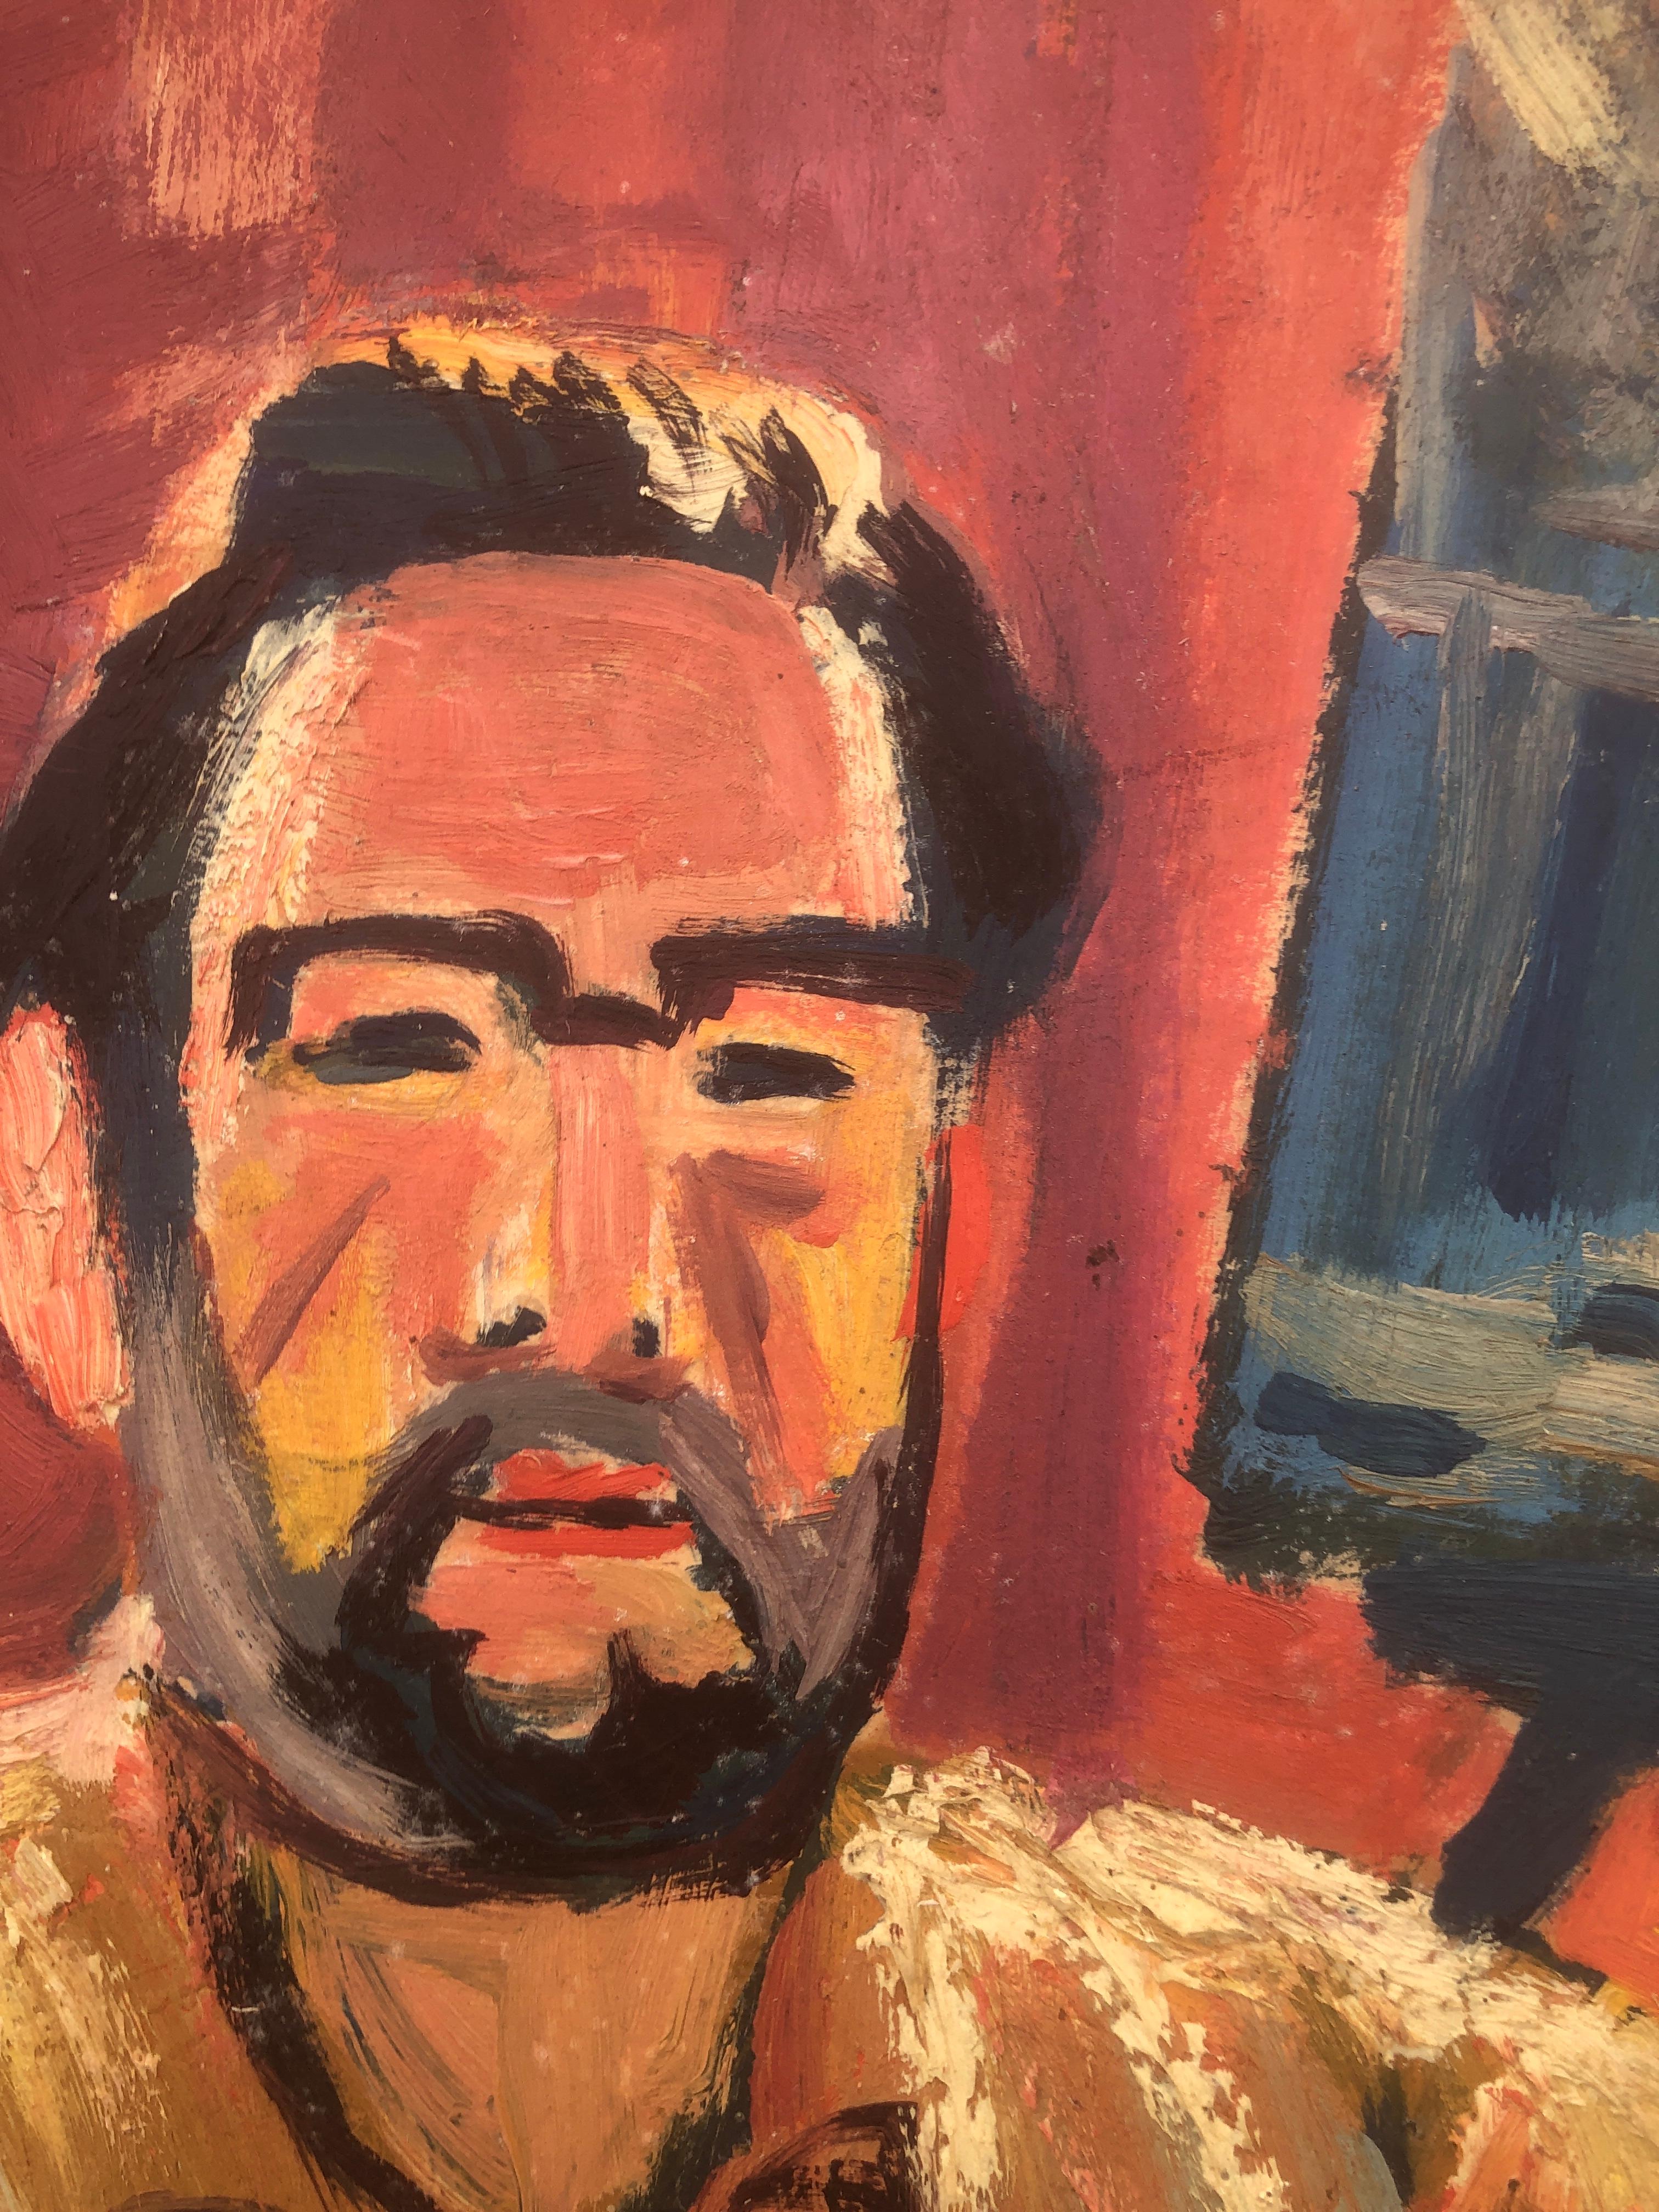 Jordi Curos - Self-Portrait - Huile sur carton
Dimensions de l'huile 55x46 cm.
Sans cadre.

Jordi Curós Ventura (Olot, Gérone, 4 mars 1930) est un peintre espagnol.

Il s'est formé à l'école des arts et métiers d'Olot, un centre de grande tradition